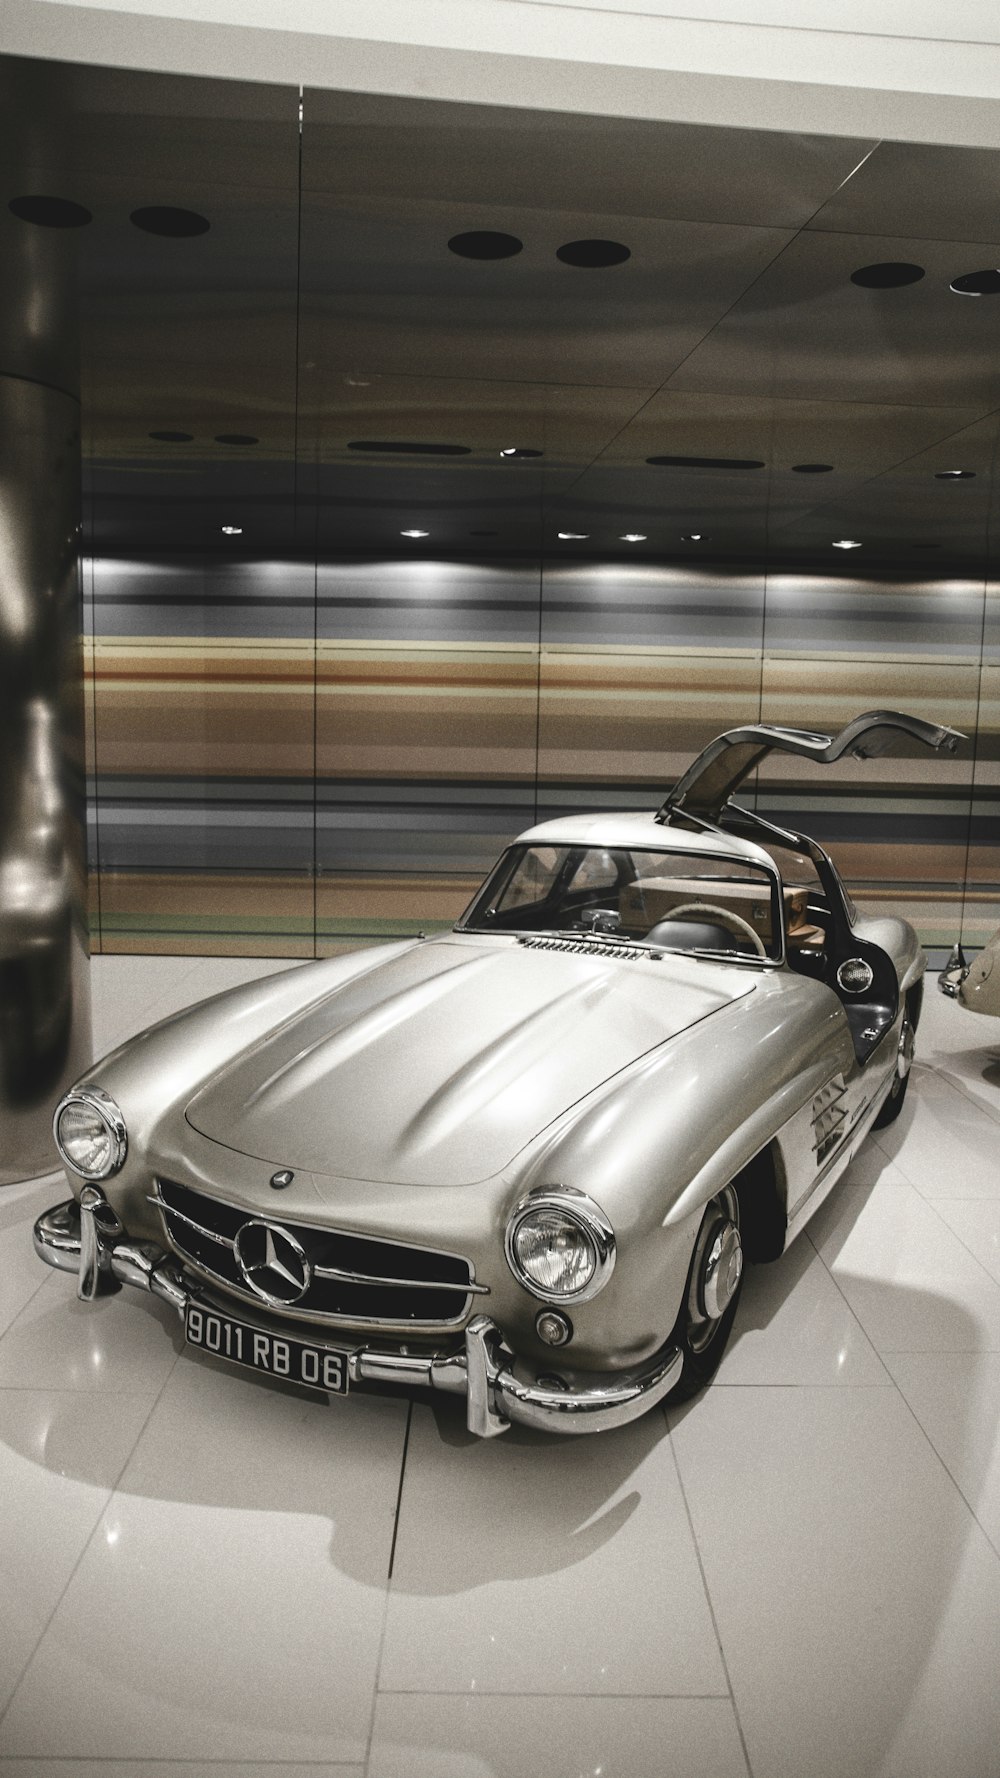 Une voiture de sport Mercedes argentée garée dans une salle d’exposition